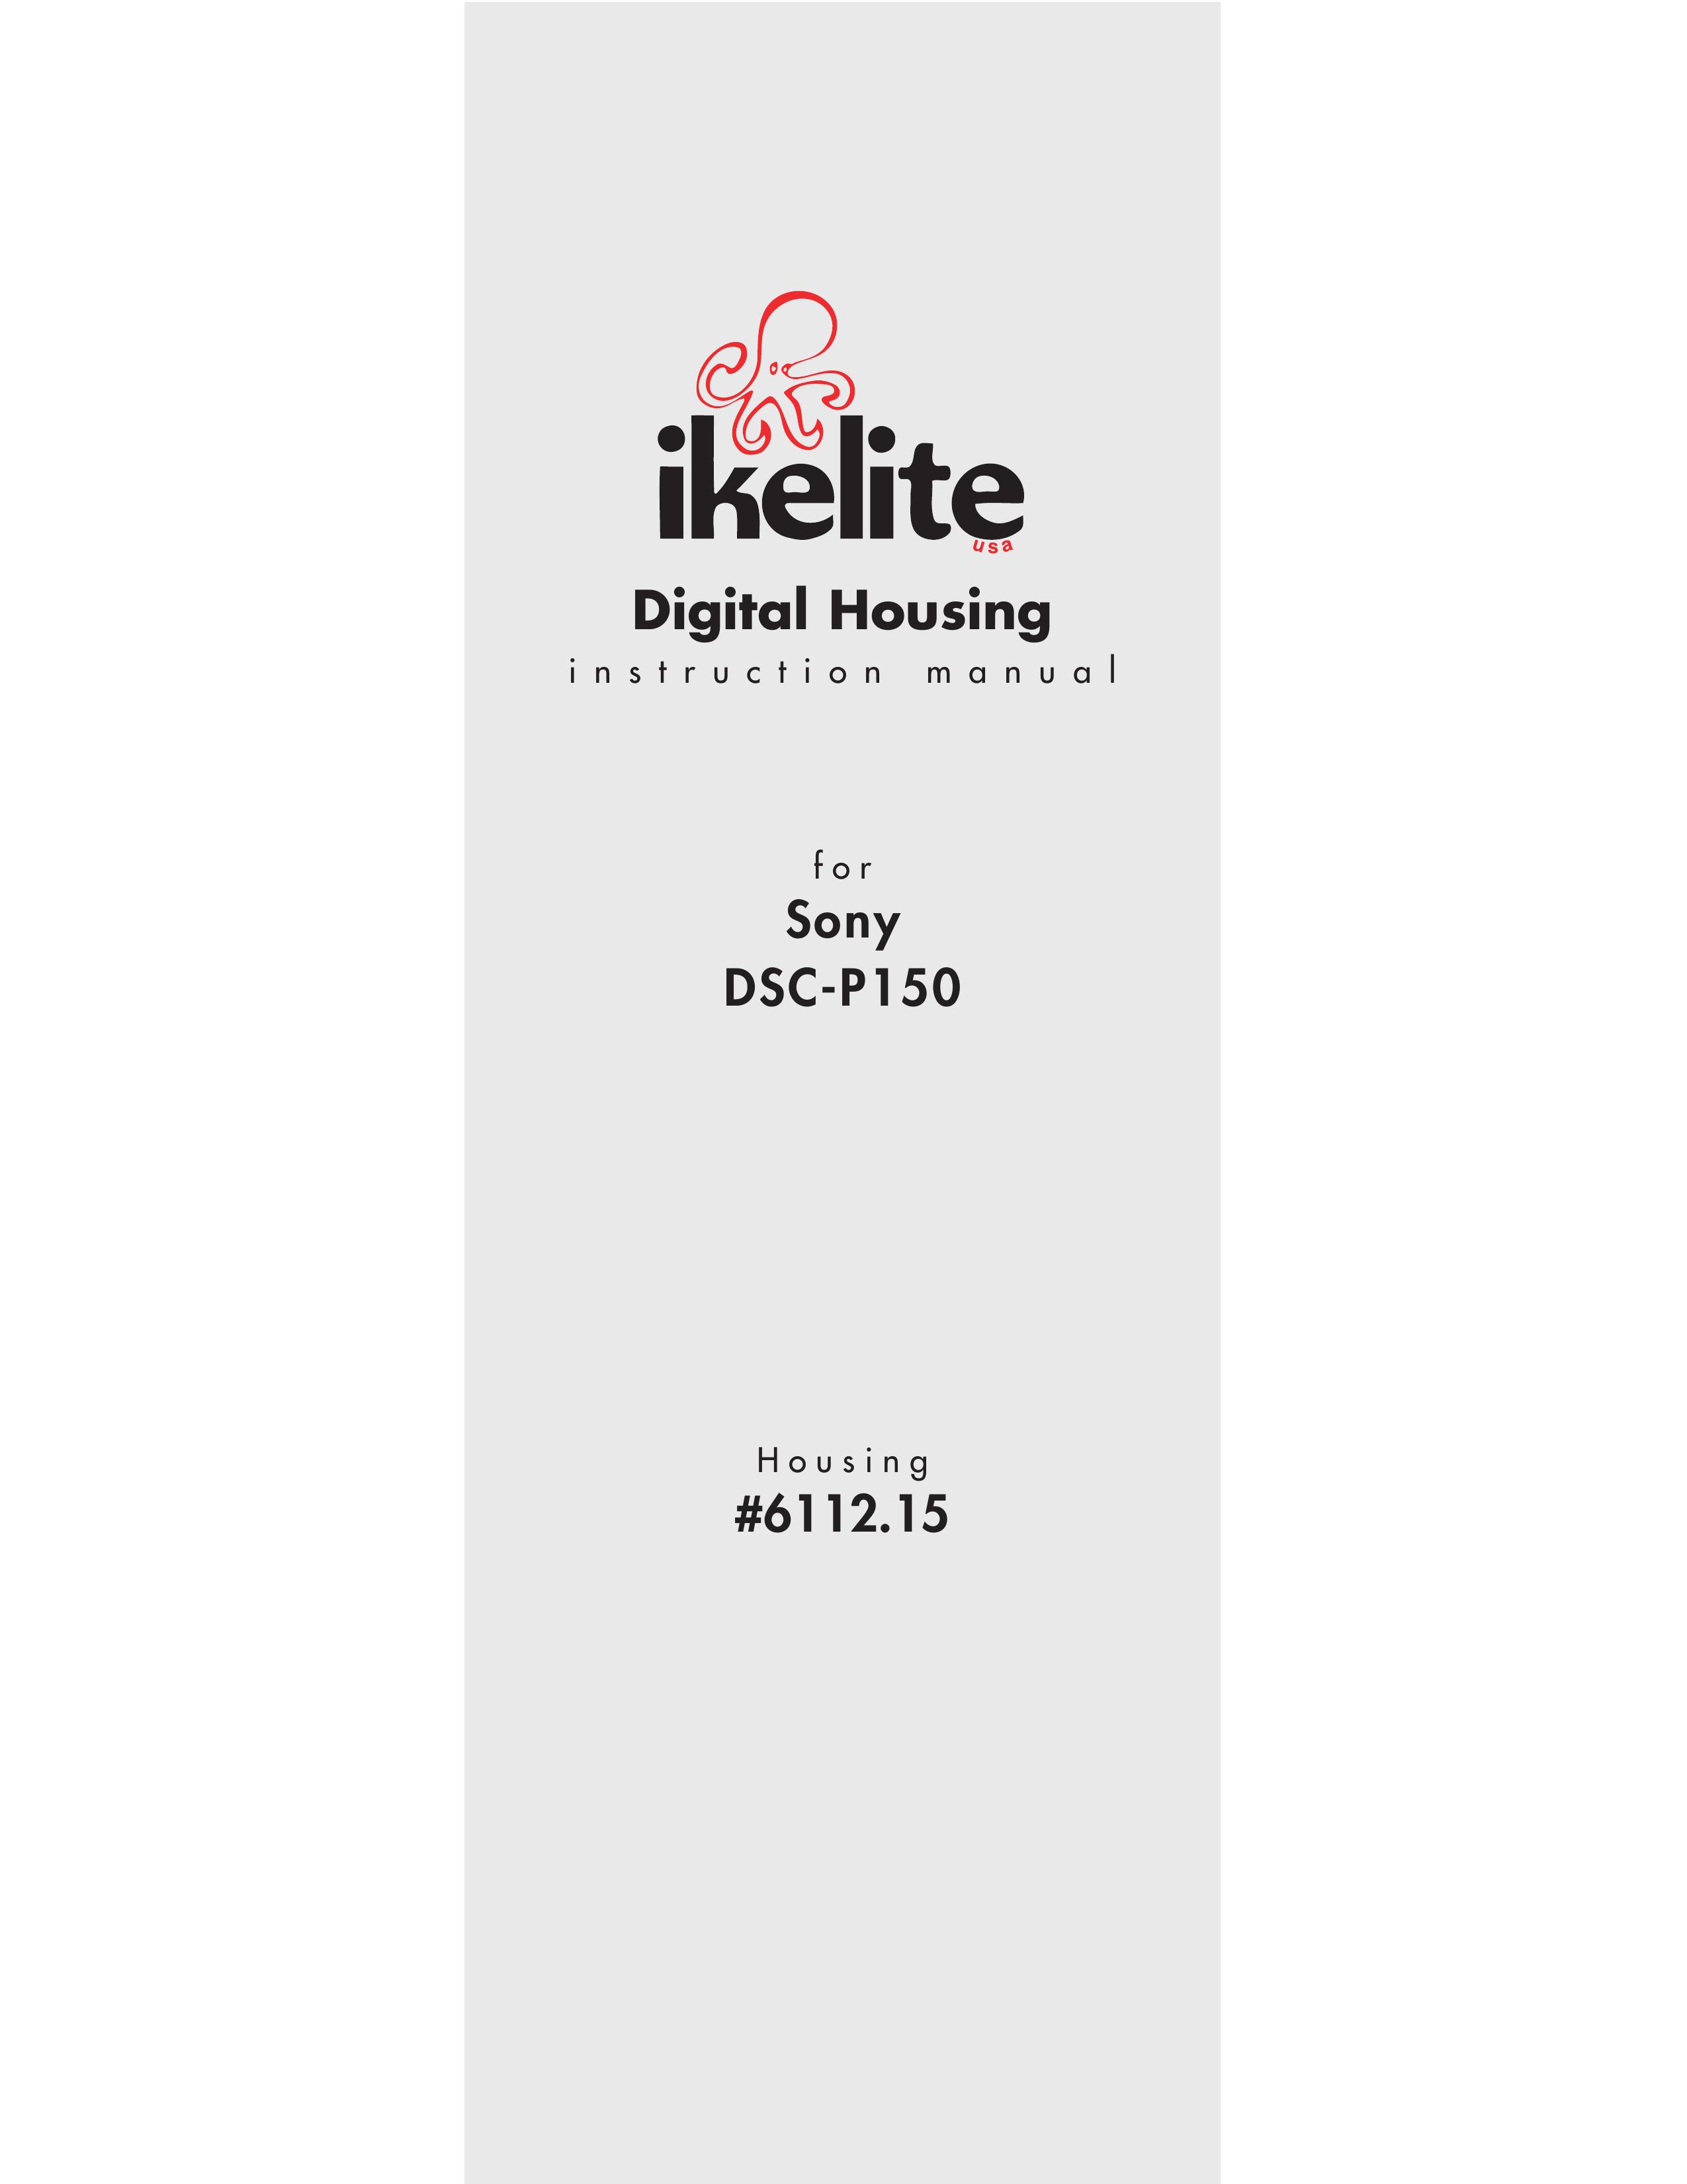 Ikelite DSC-P150 Digital Camera User Manual